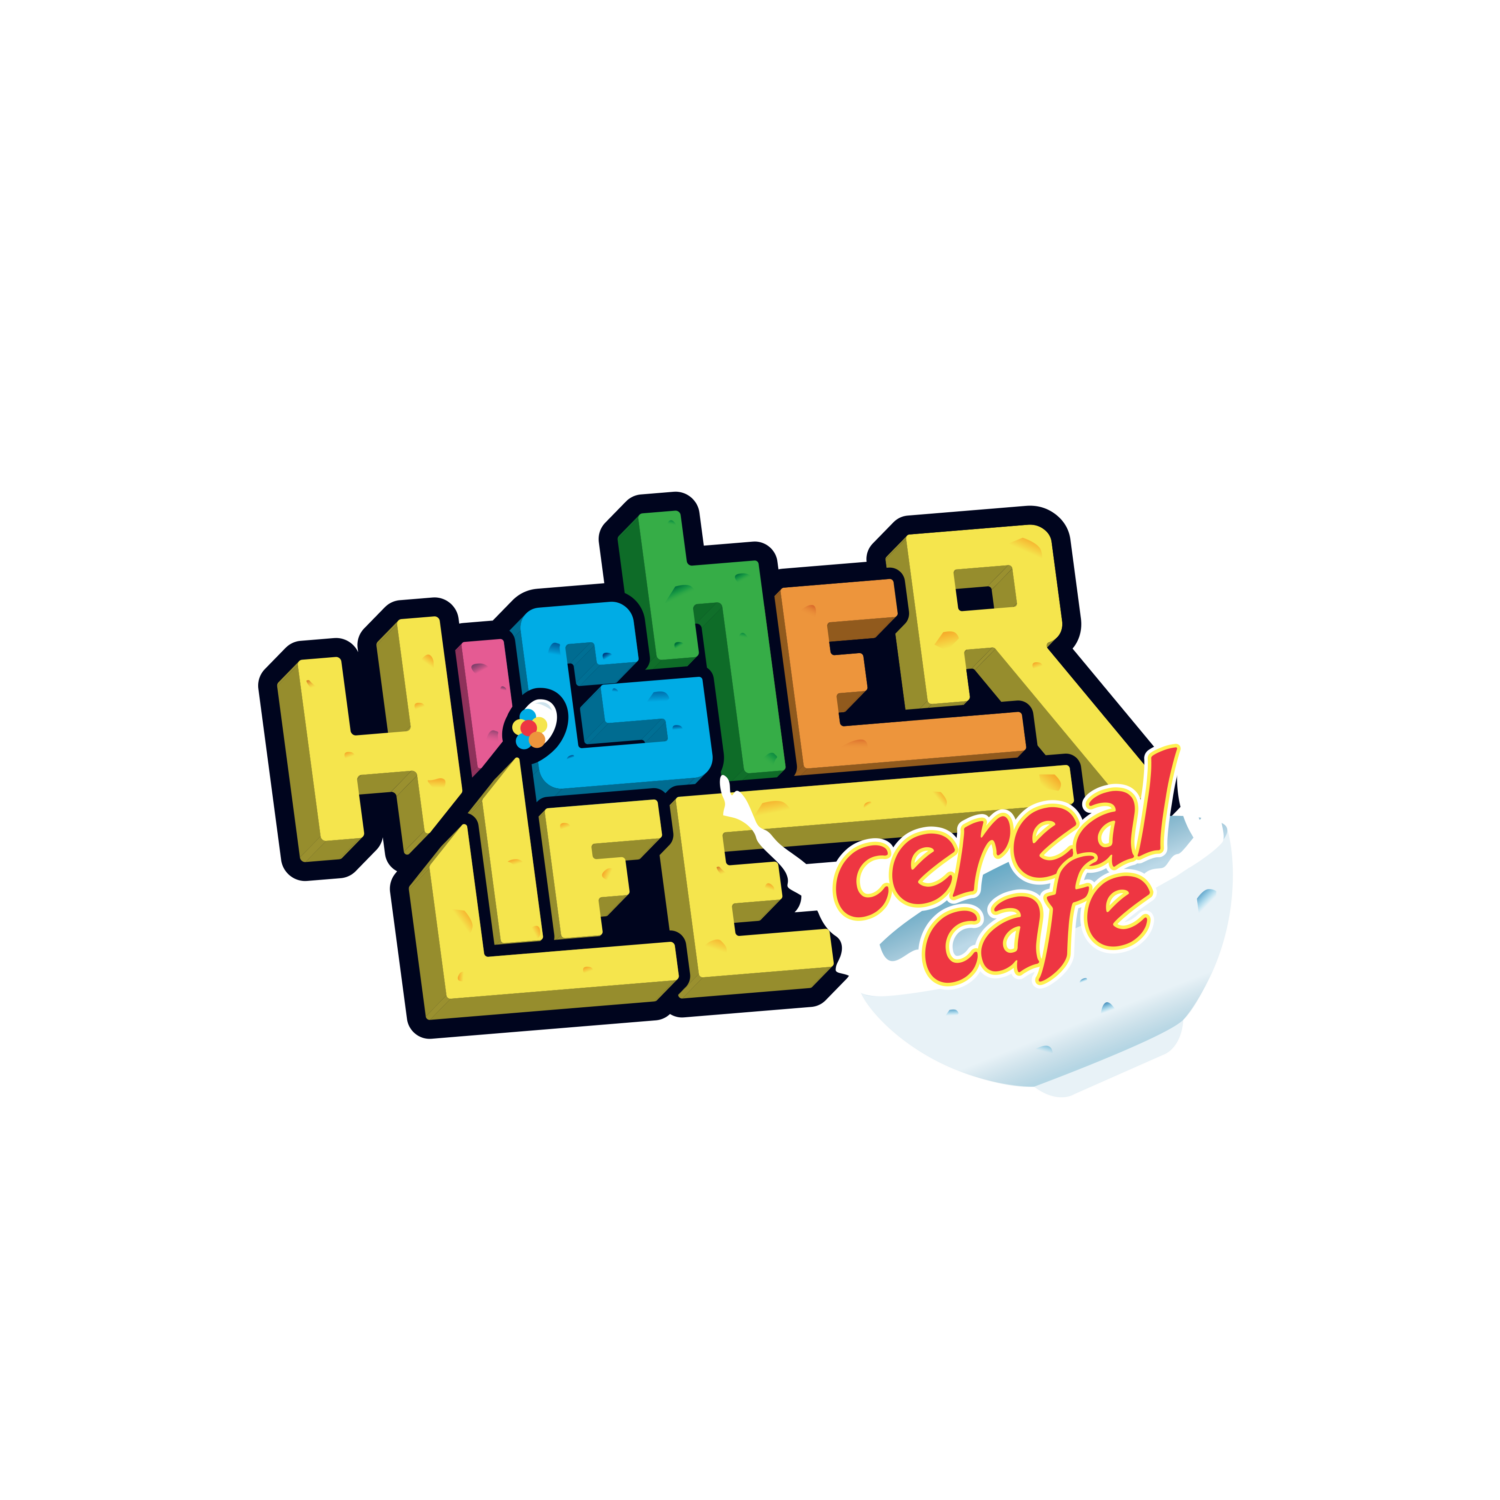 HigherLife CerealCafe